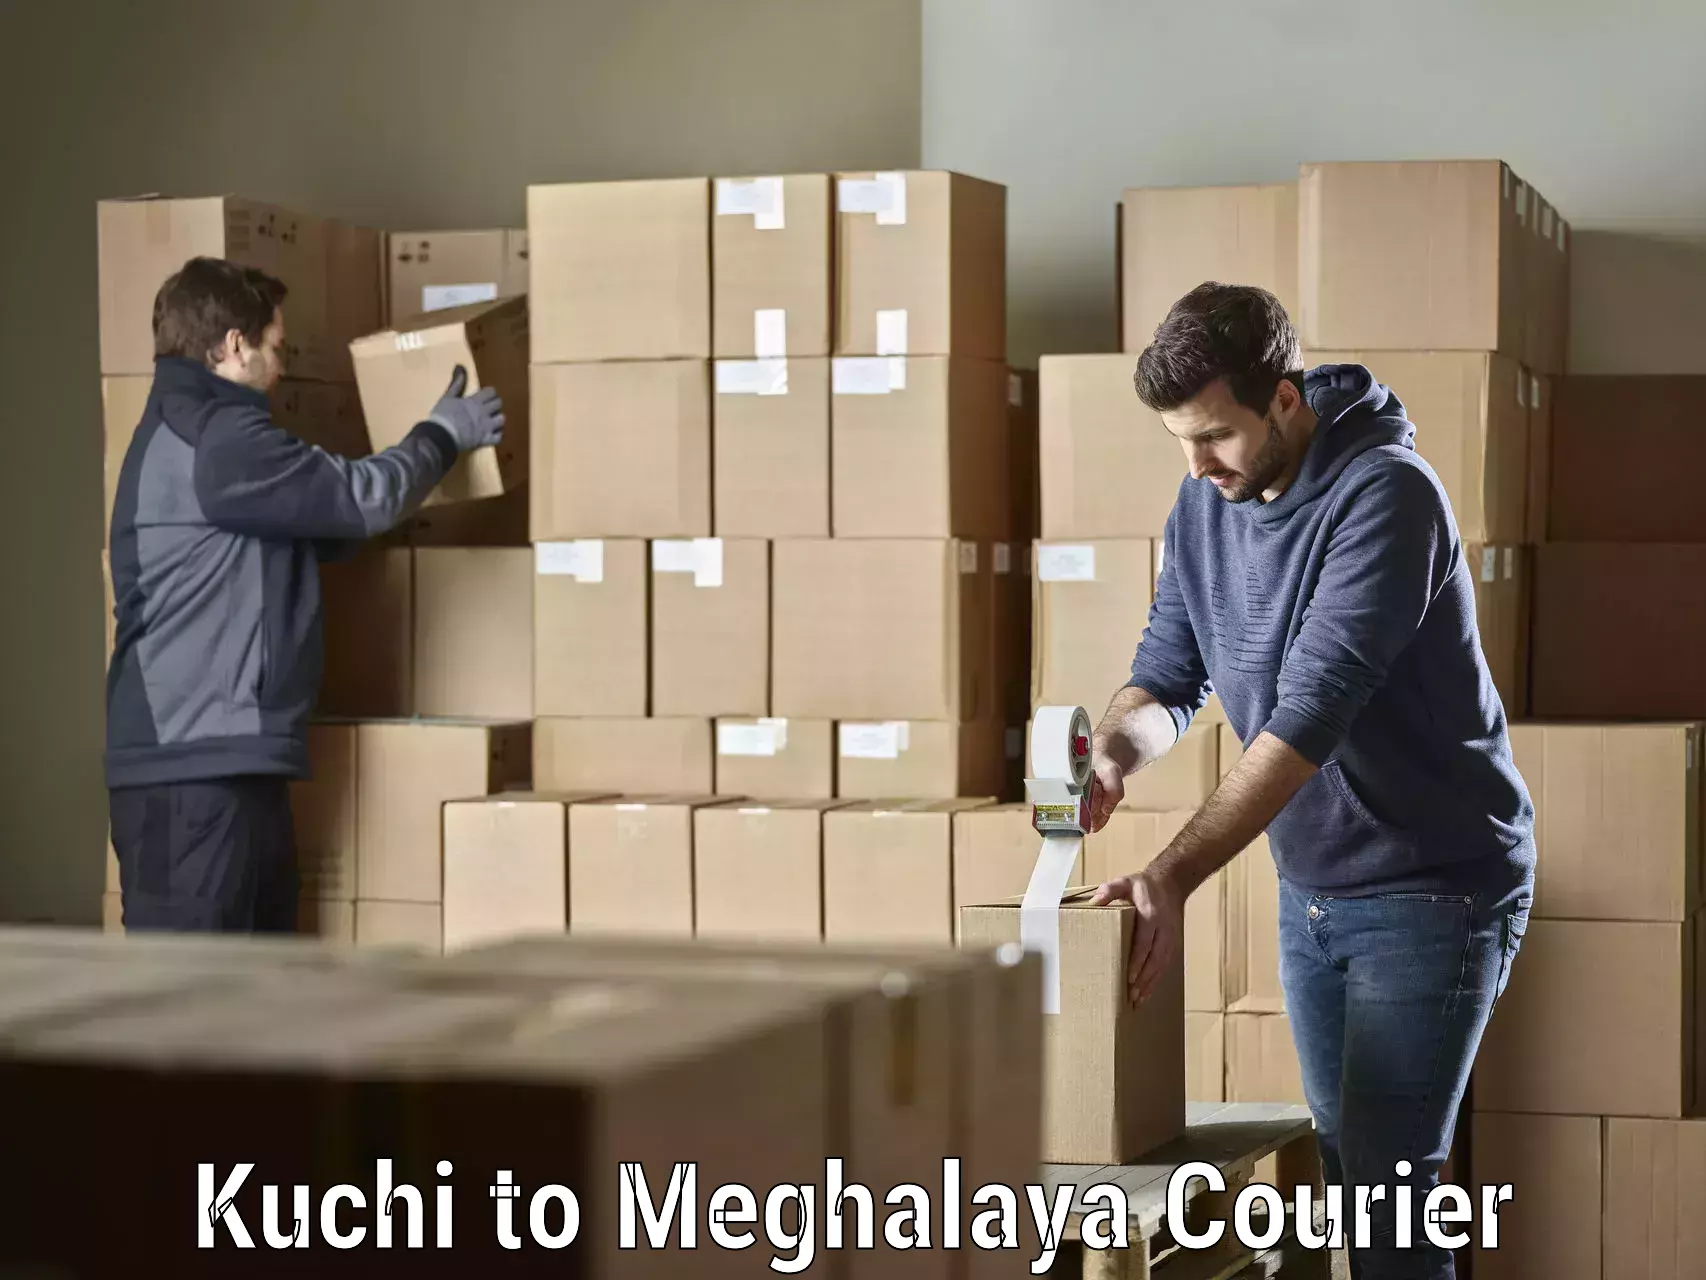 Premium courier services in Kuchi to Cherrapunji